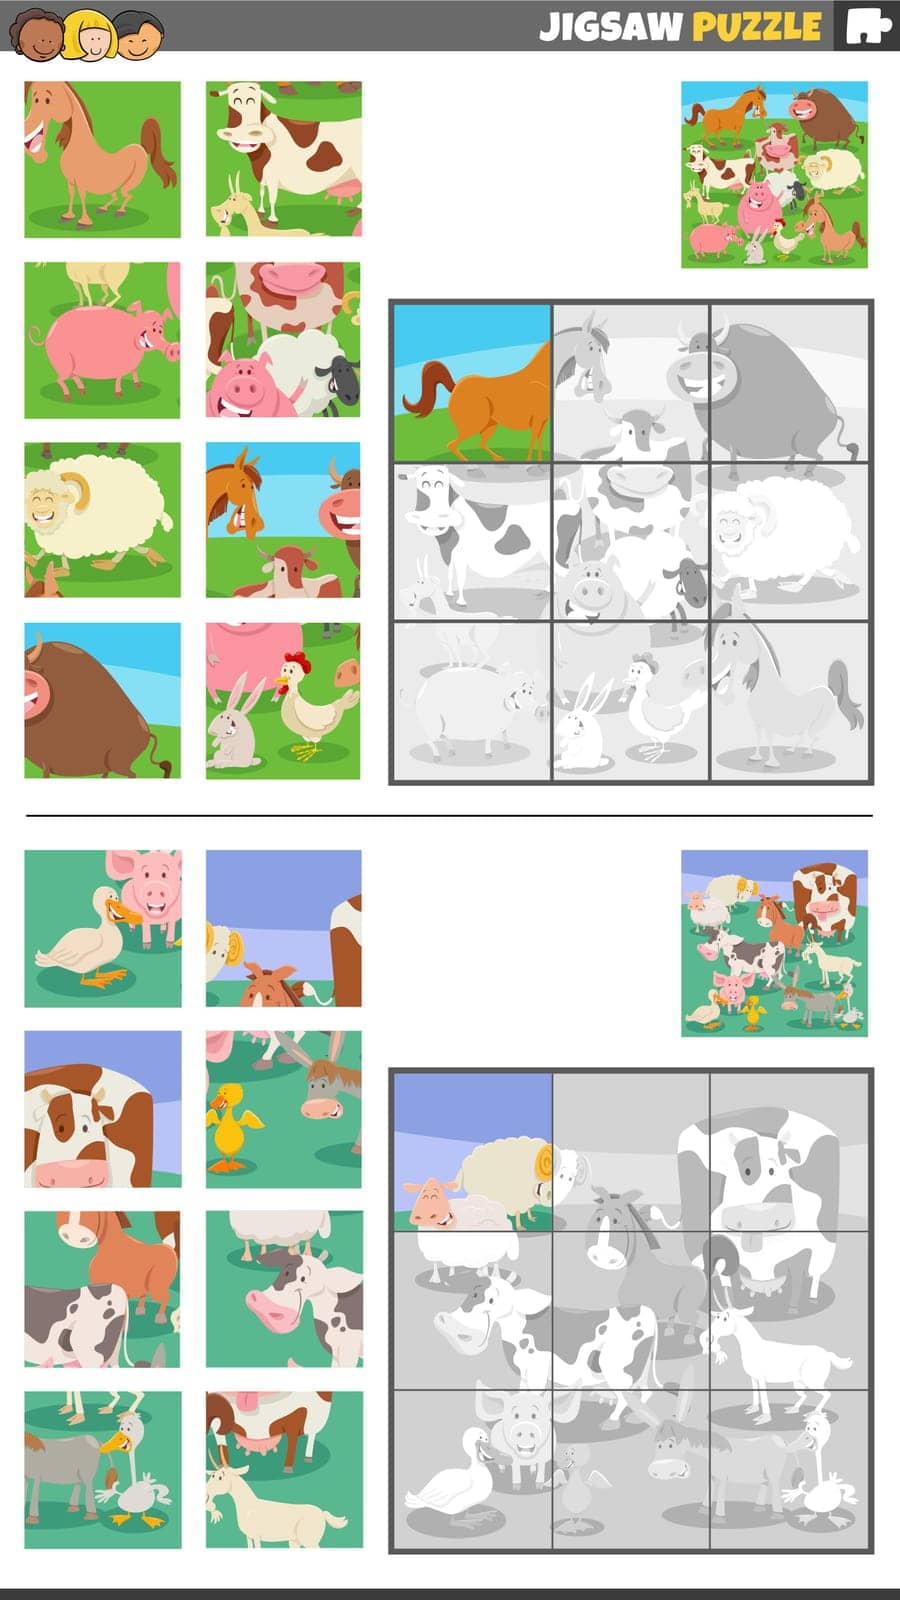 jigsaw puzzle game set with cartoon farm animals by izakowski